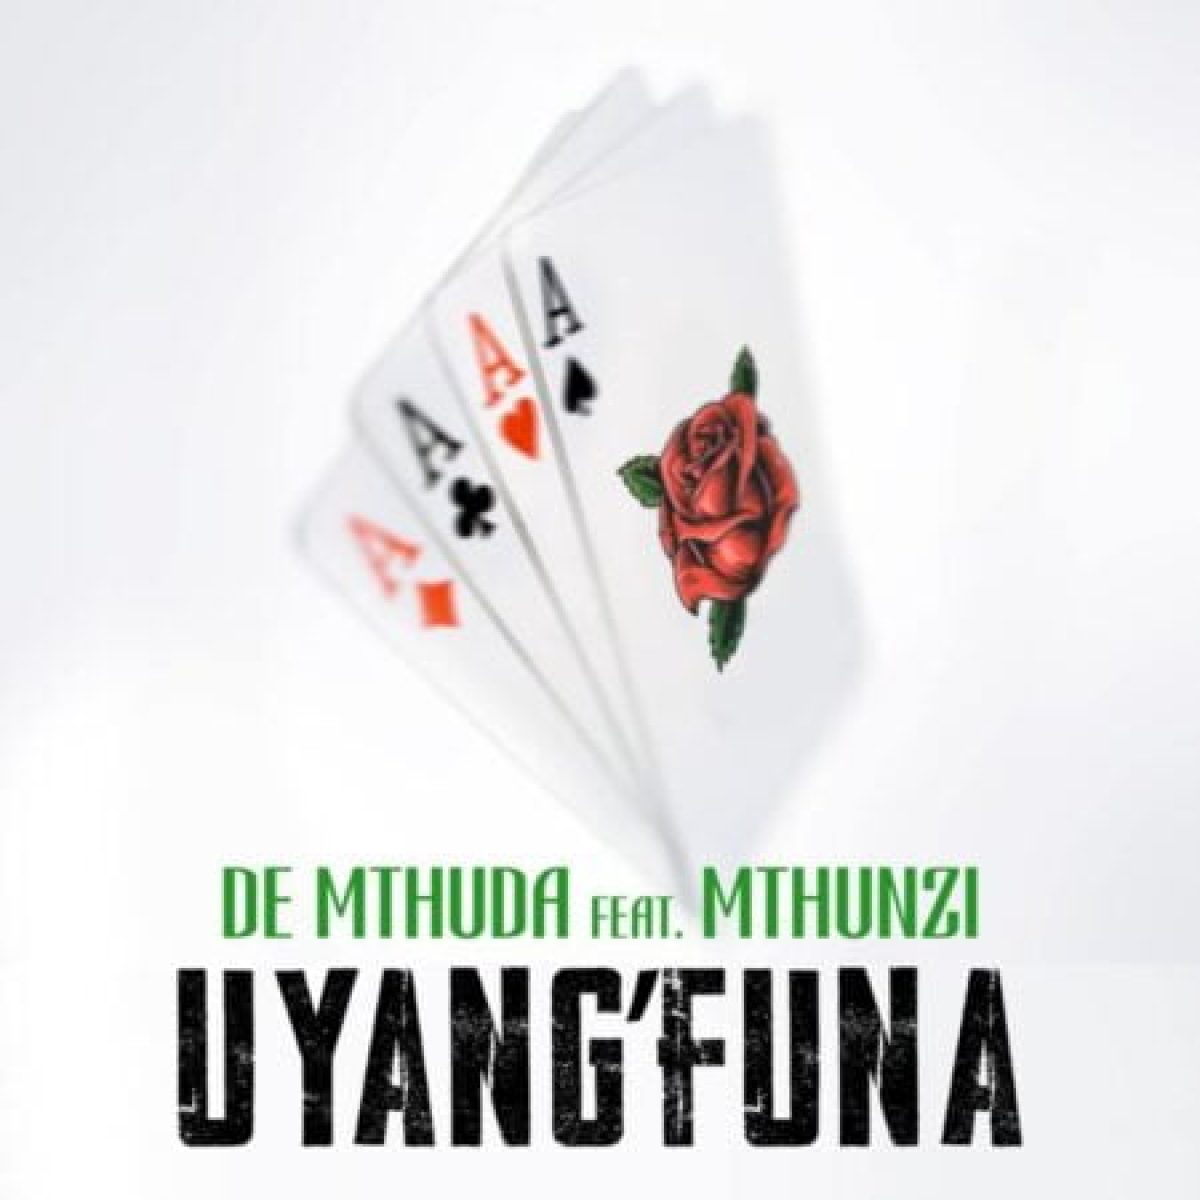 Uyang'funa (Ft Mthunzi)